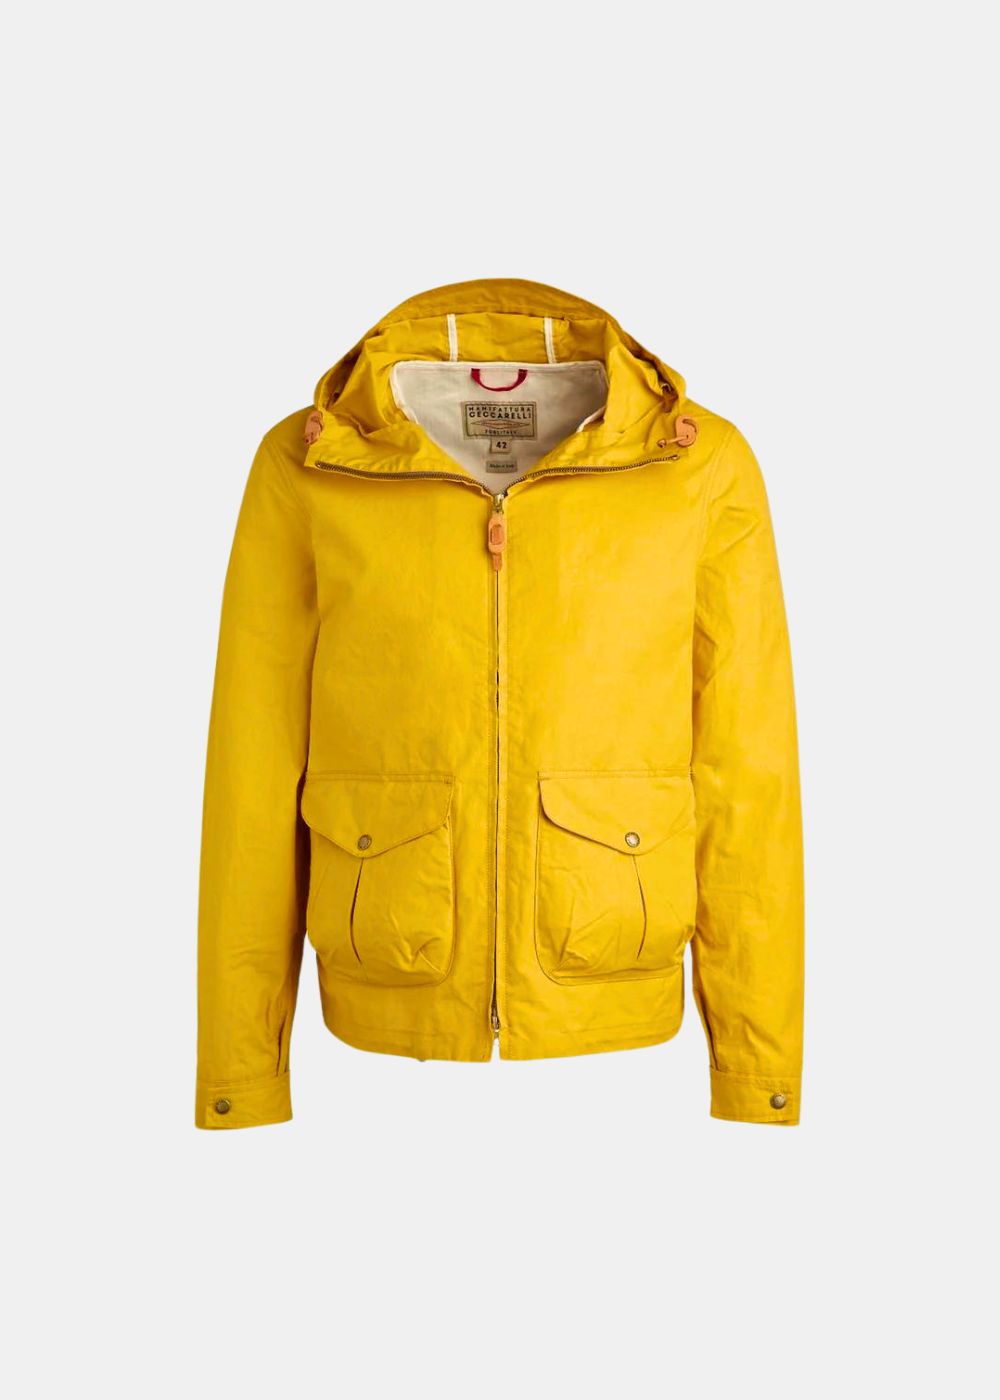 Featured image for “Giubbino Blazer Coat W/Hood - Manifattura Ceccarelli”